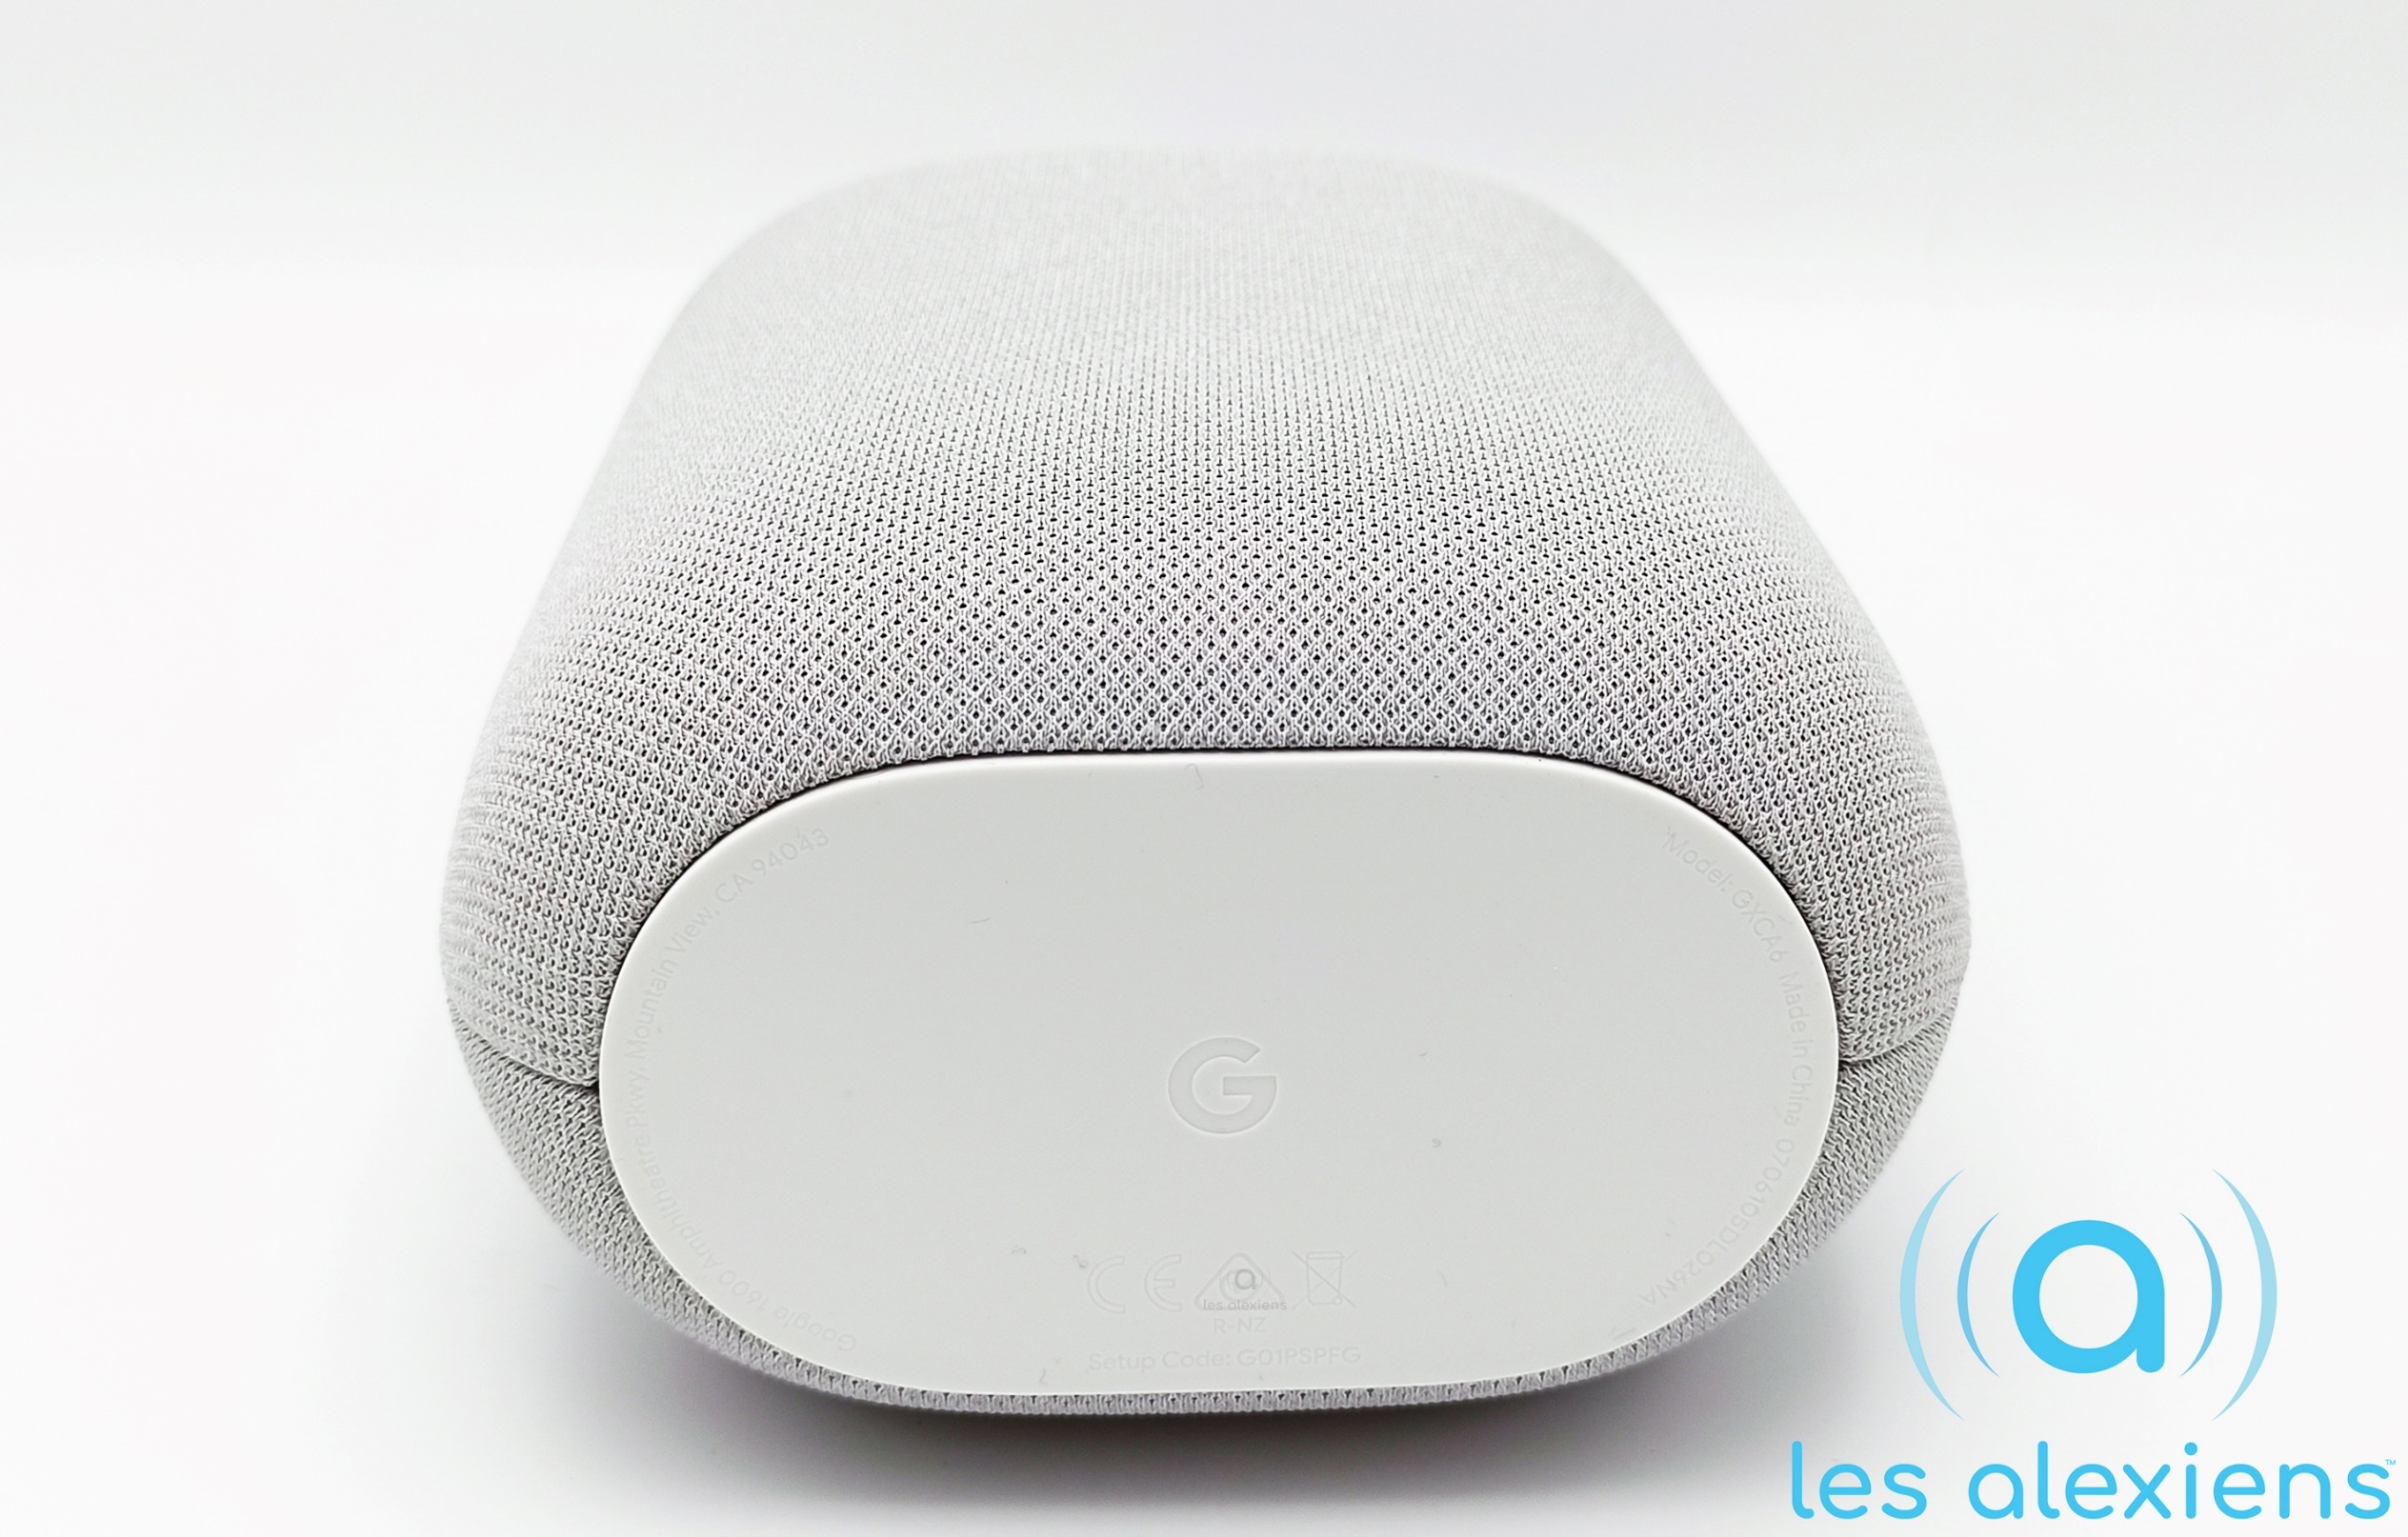 Test Nest Audio : Google Assistant a enfin de la voix ! – Les Alexiens